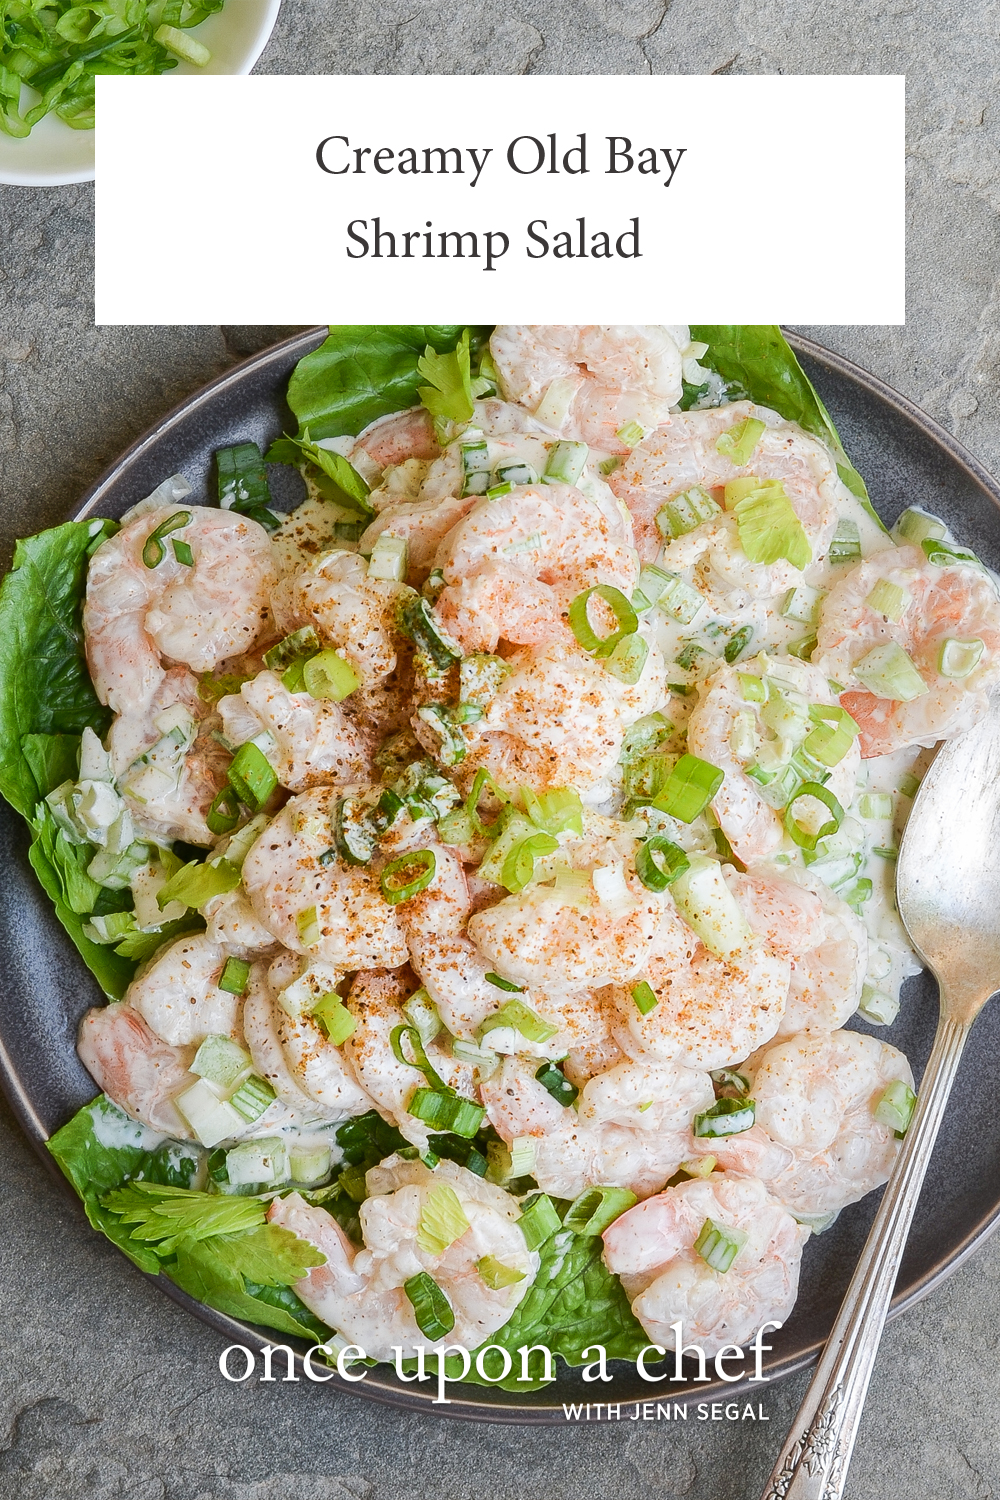 Shrimp Salad - Once Upon a Chef